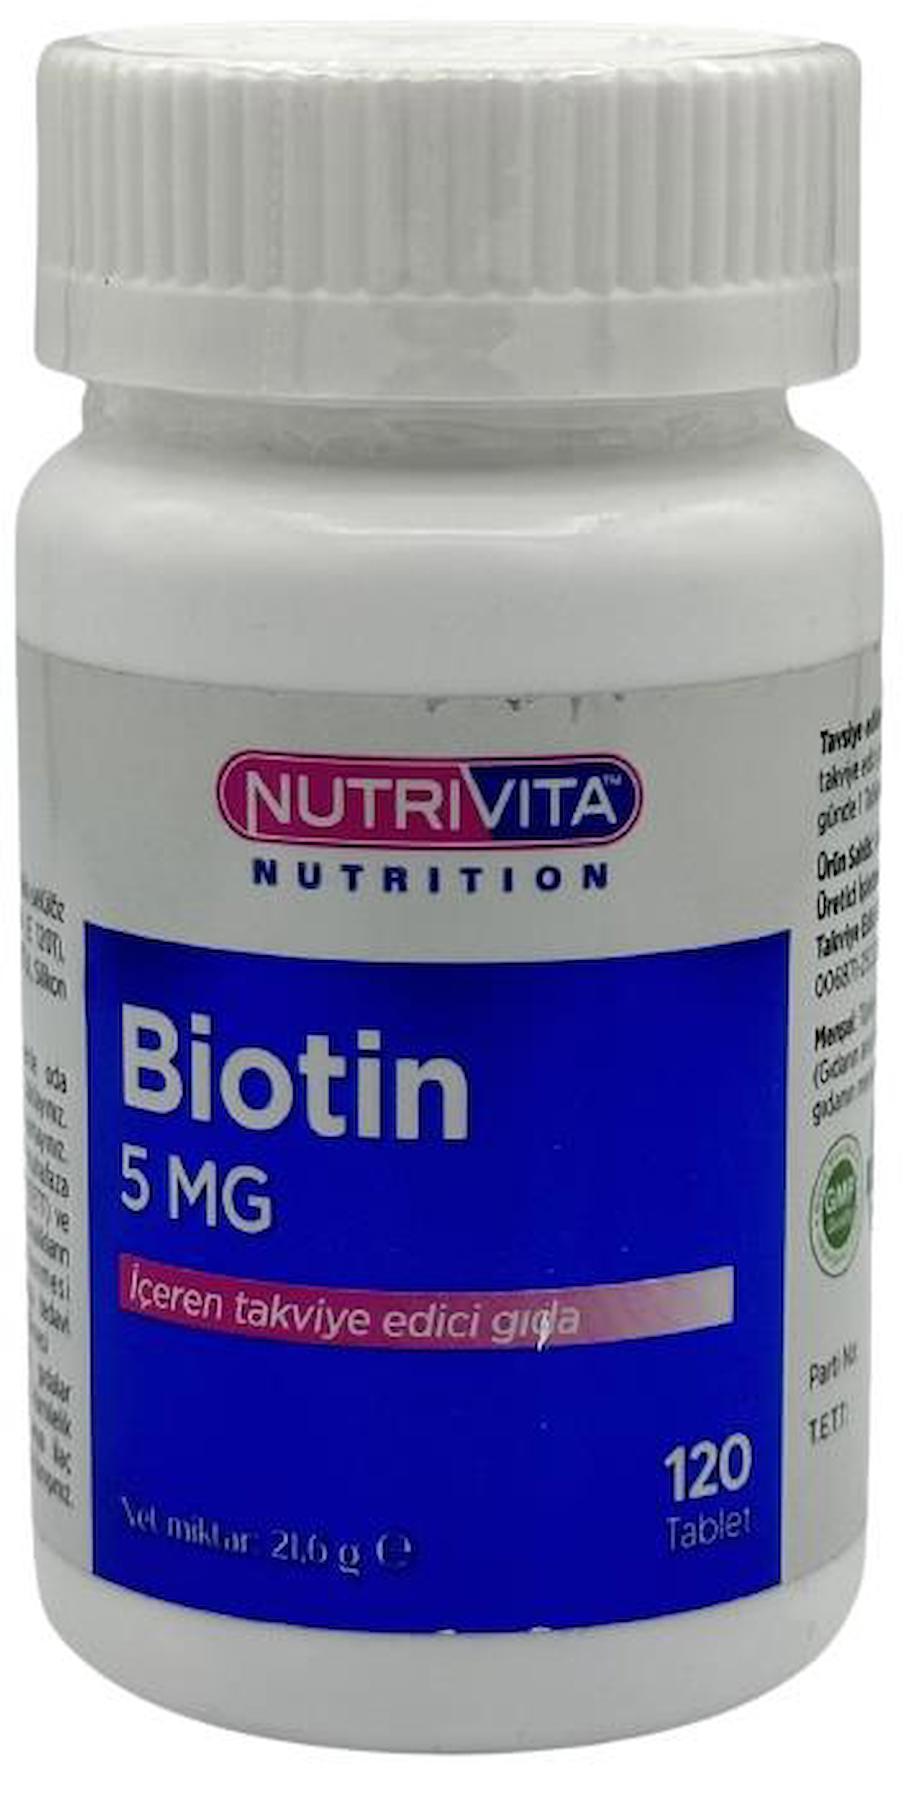 Nutrivita Nutrition Biotin Sade Unisex Vitamin 120 Tablet